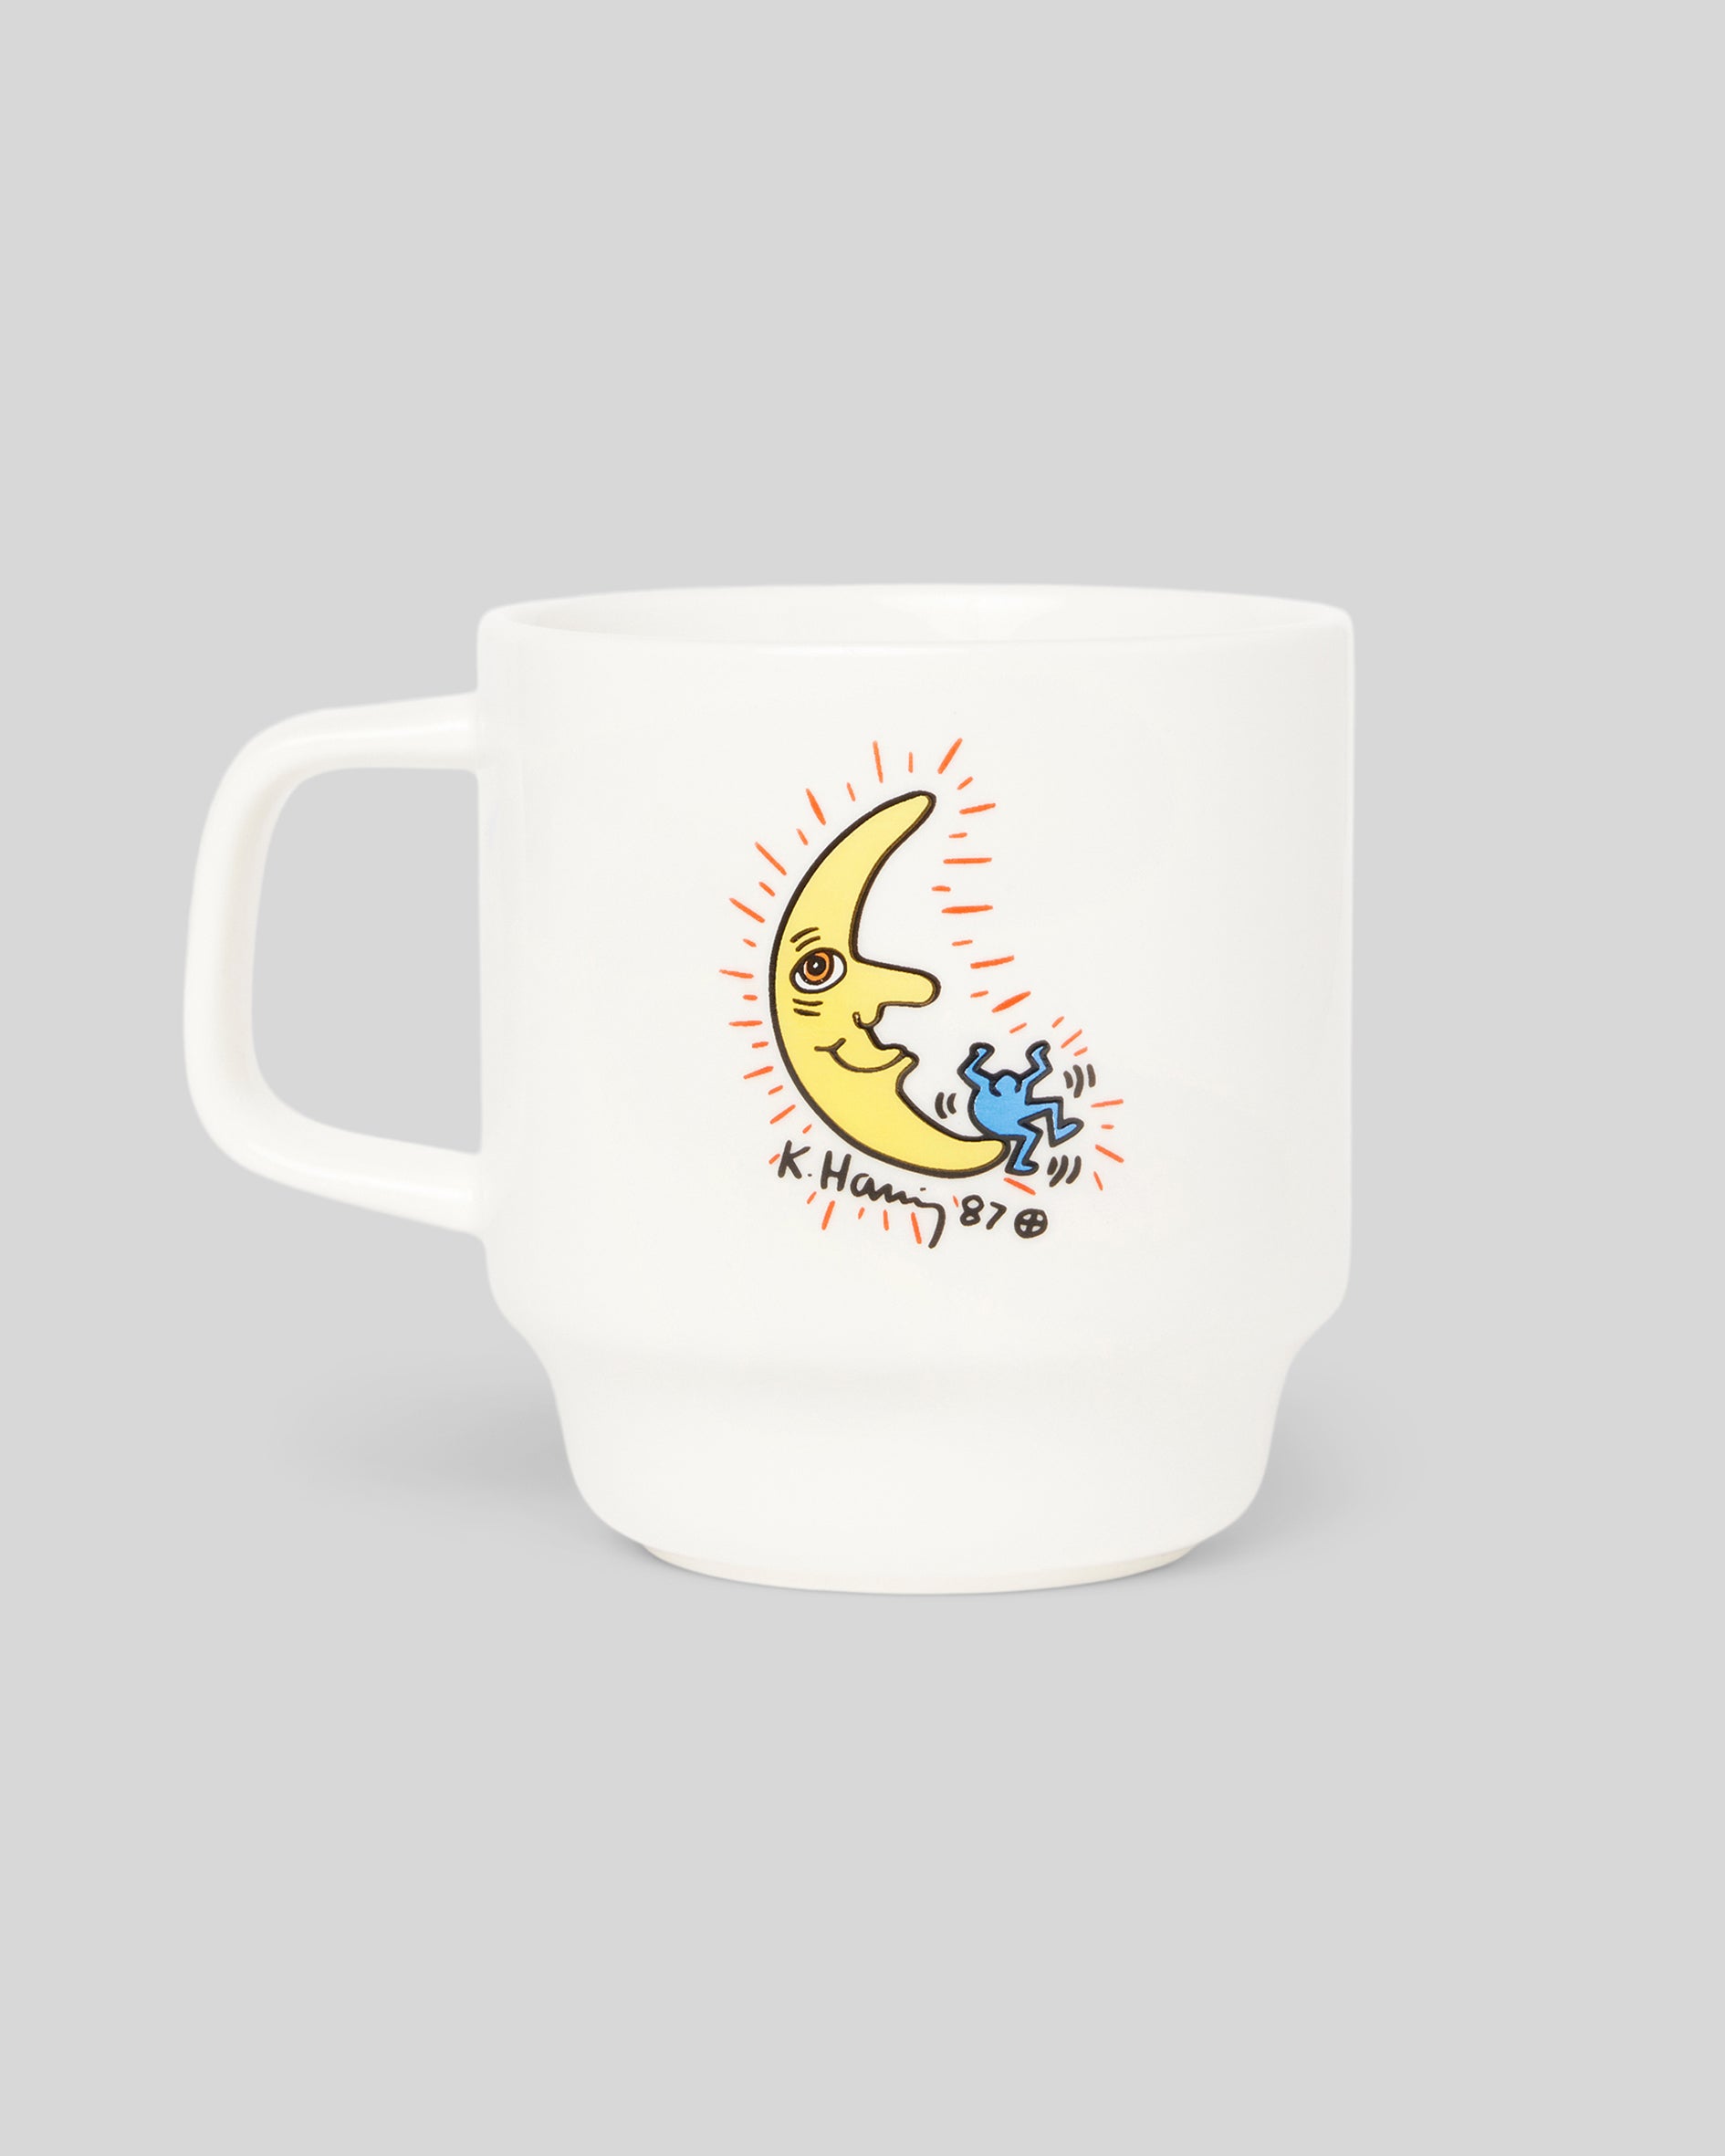 Haring Moon Mug